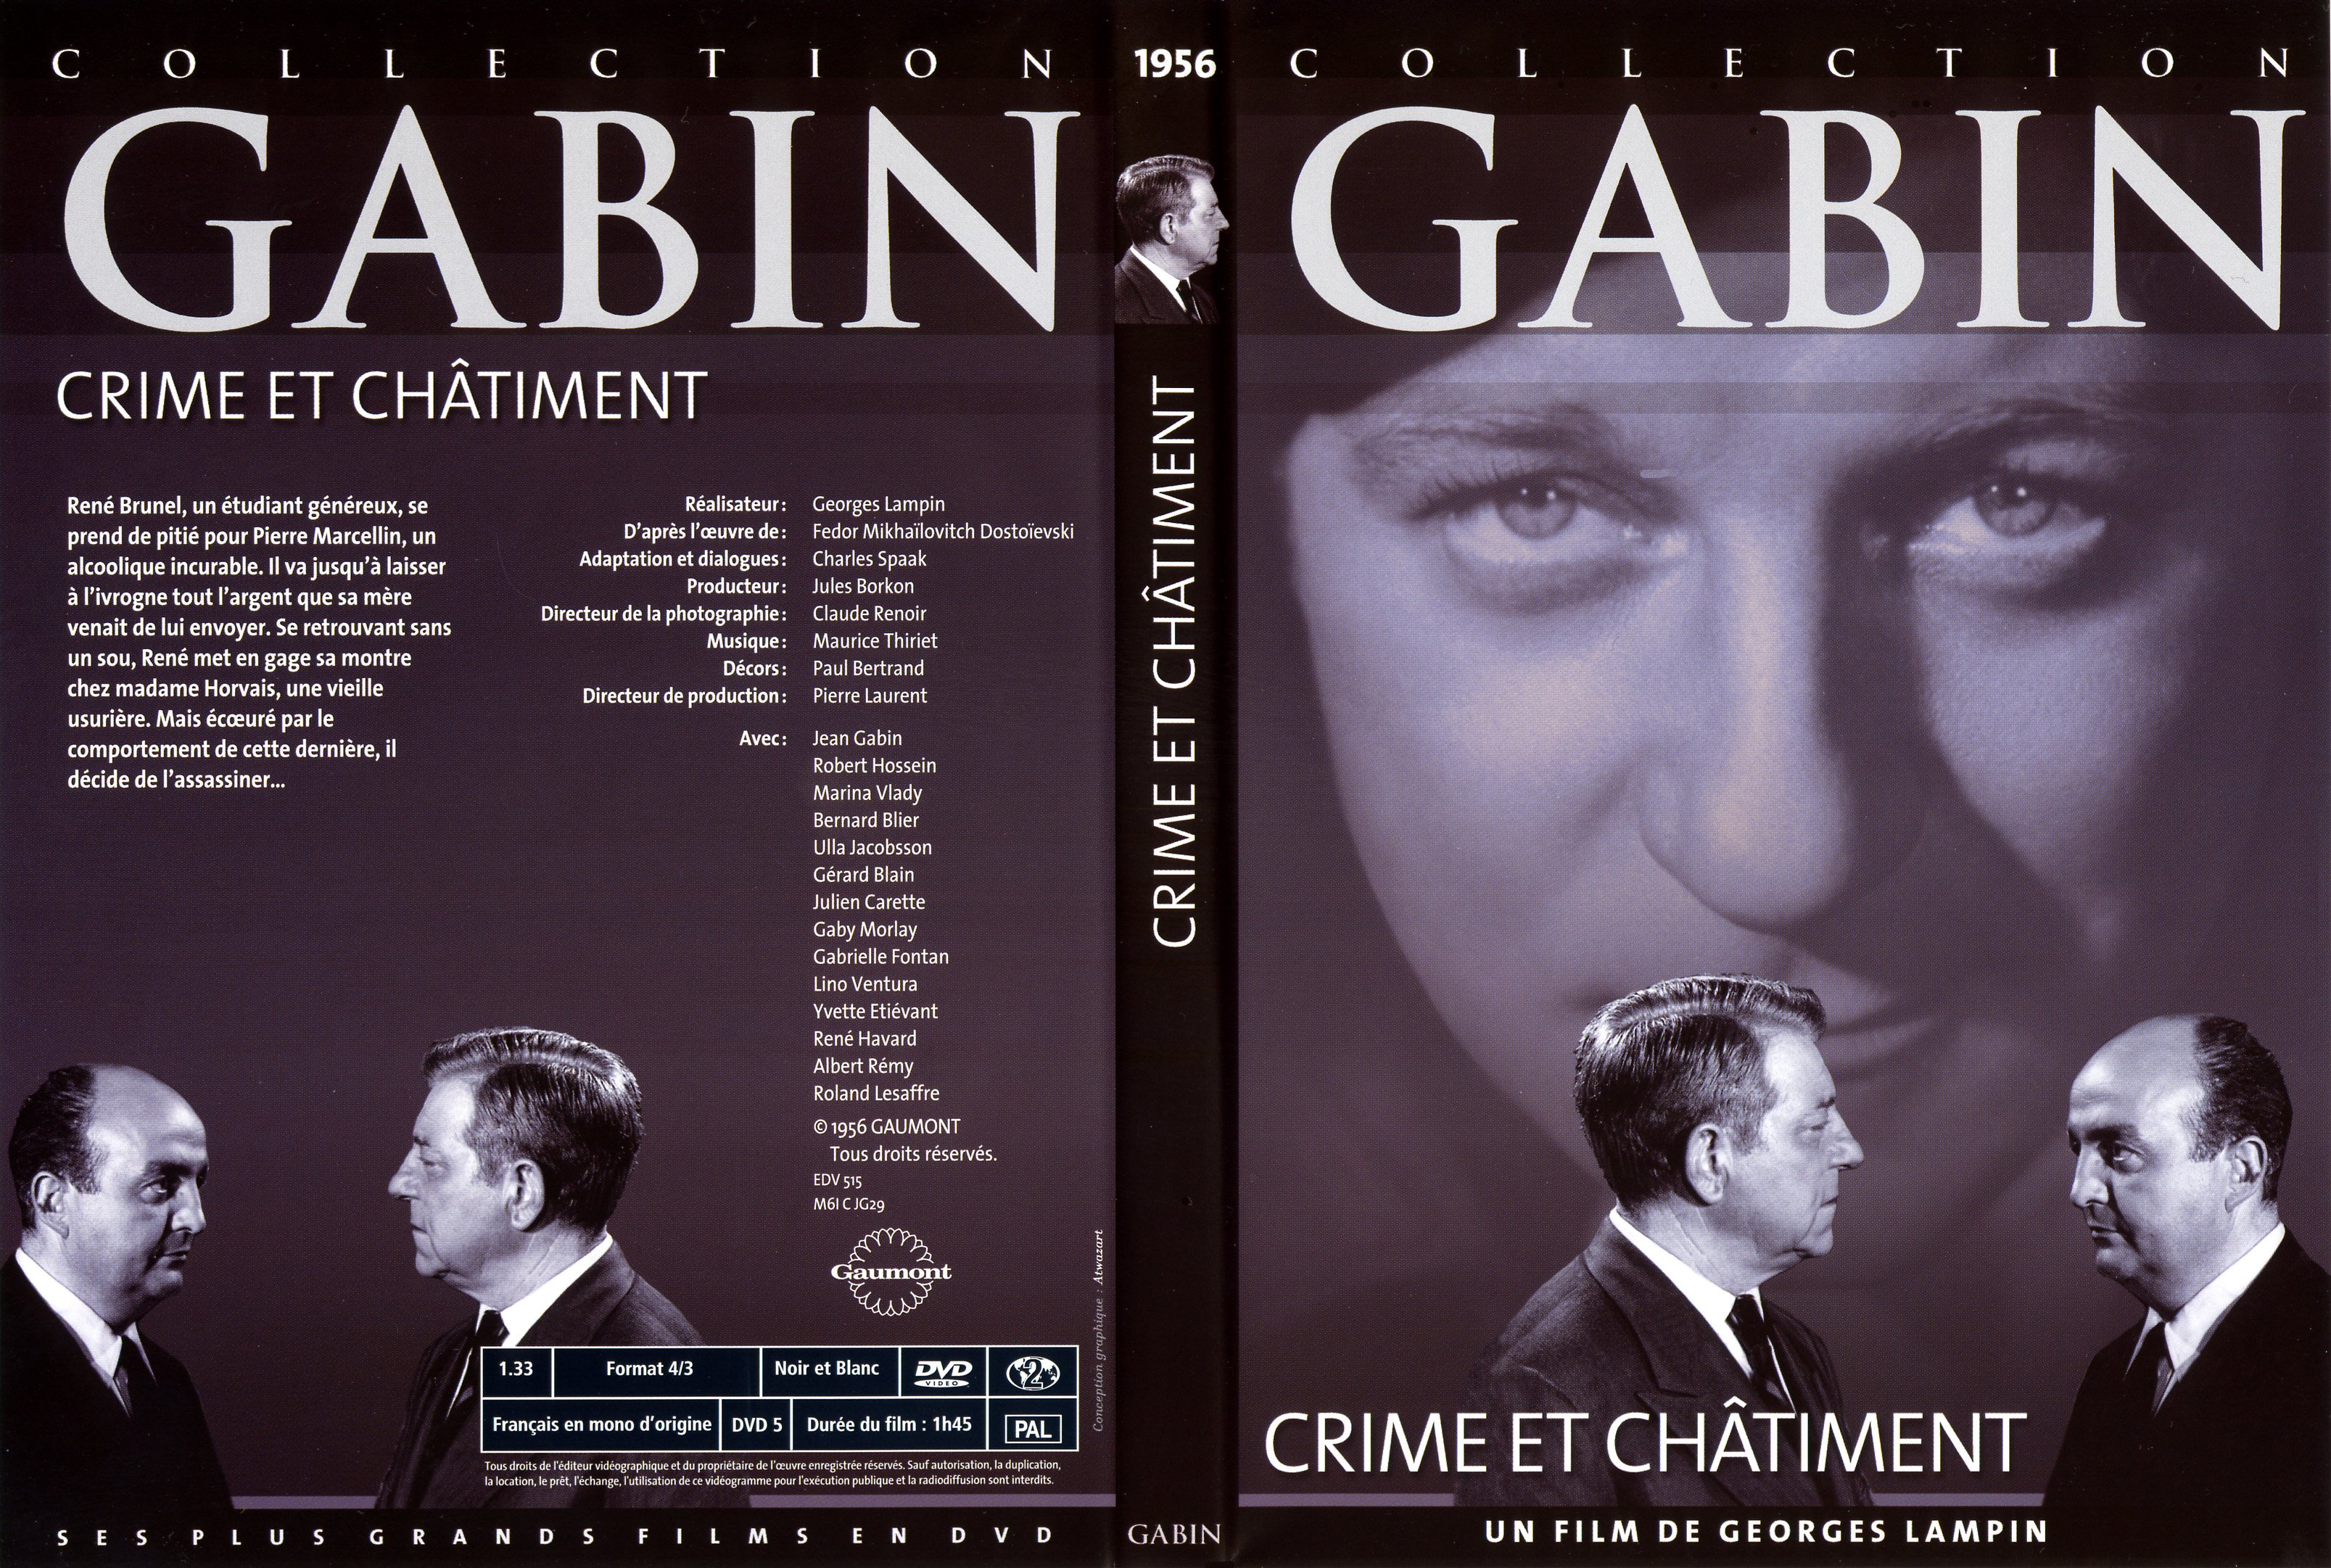 Jaquette DVD Crime et chatiment (Jean Gabin)